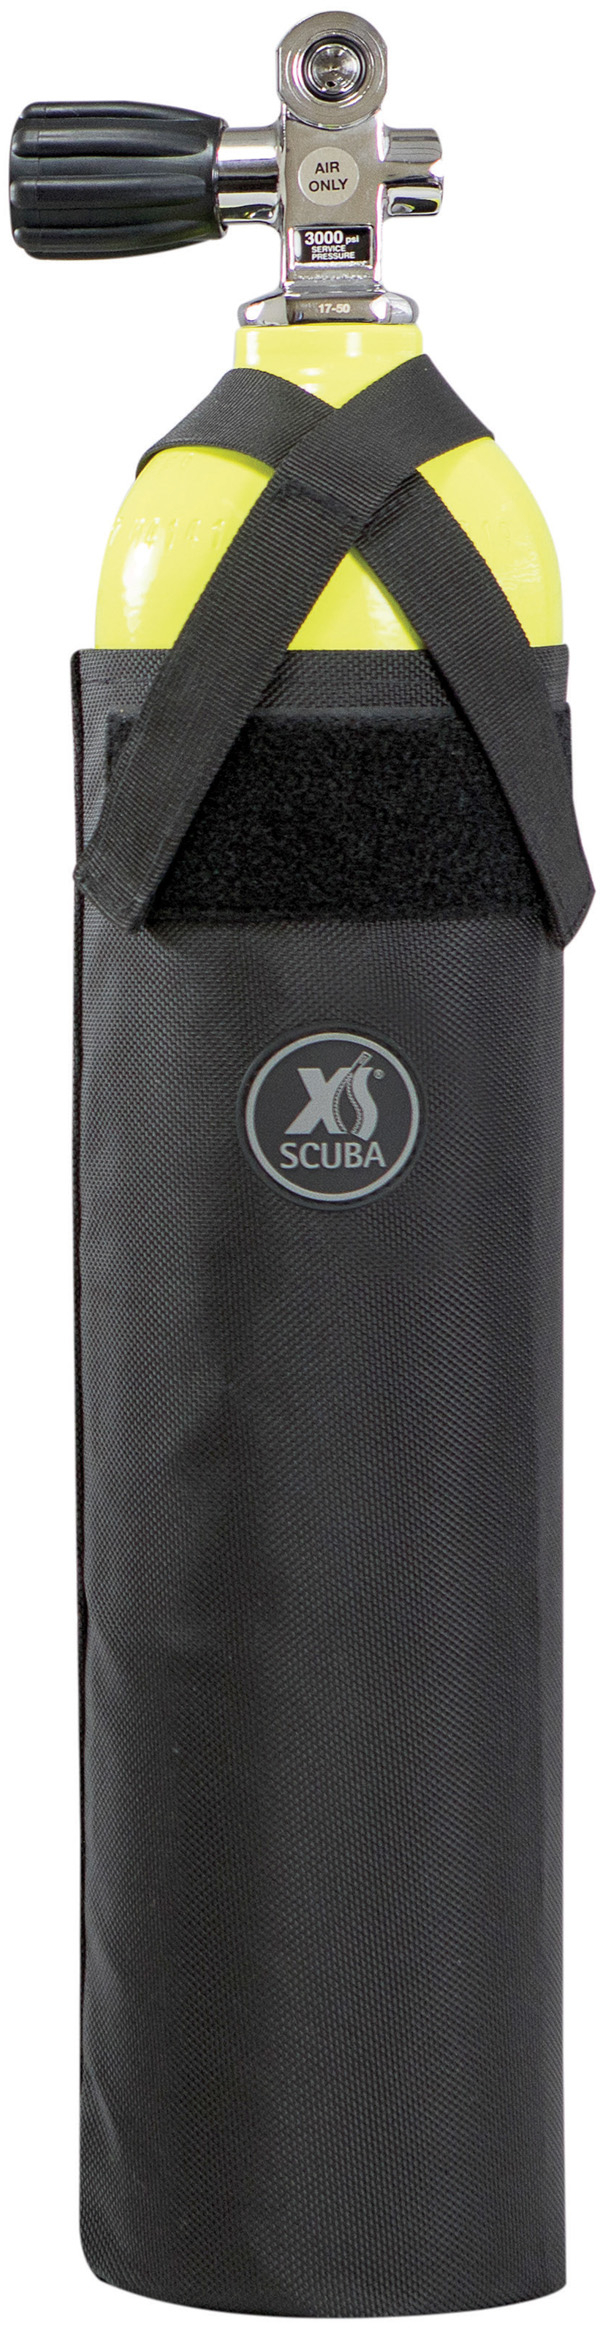 XS Scuba 19 cu. Ft. Diving Pony Bottle Bag